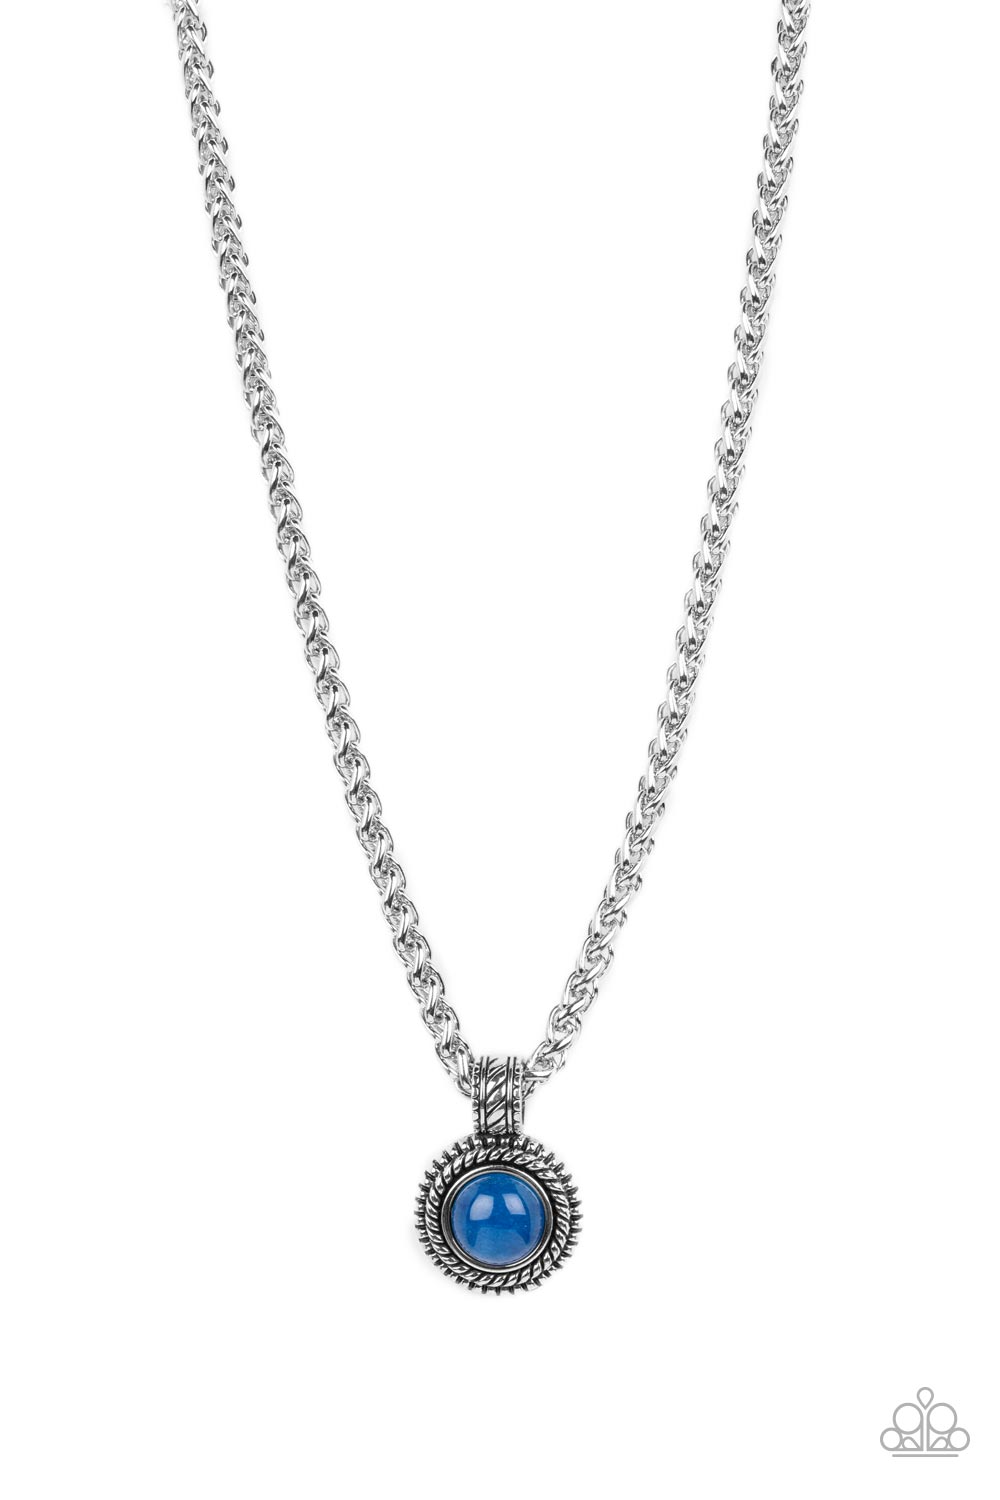 Pendant Dreams - Blue Necklace